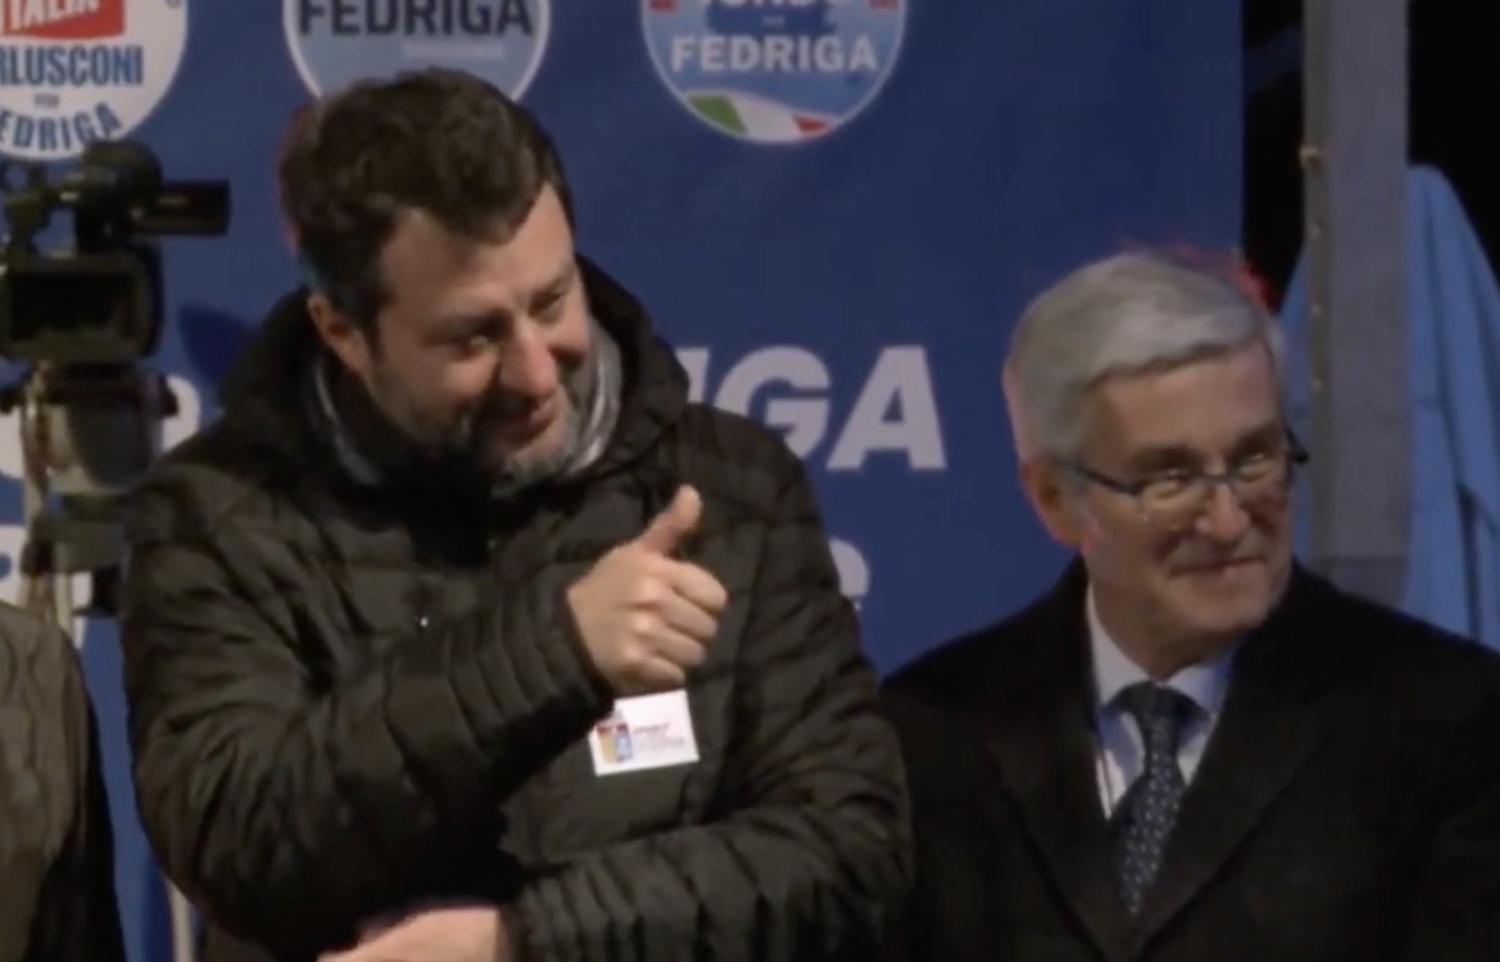 Il caso al comizio del centrodestra a Udine, i leghisti non cantano l’Inno di Mameli: sul palco Salvini e Fedriga – Il video